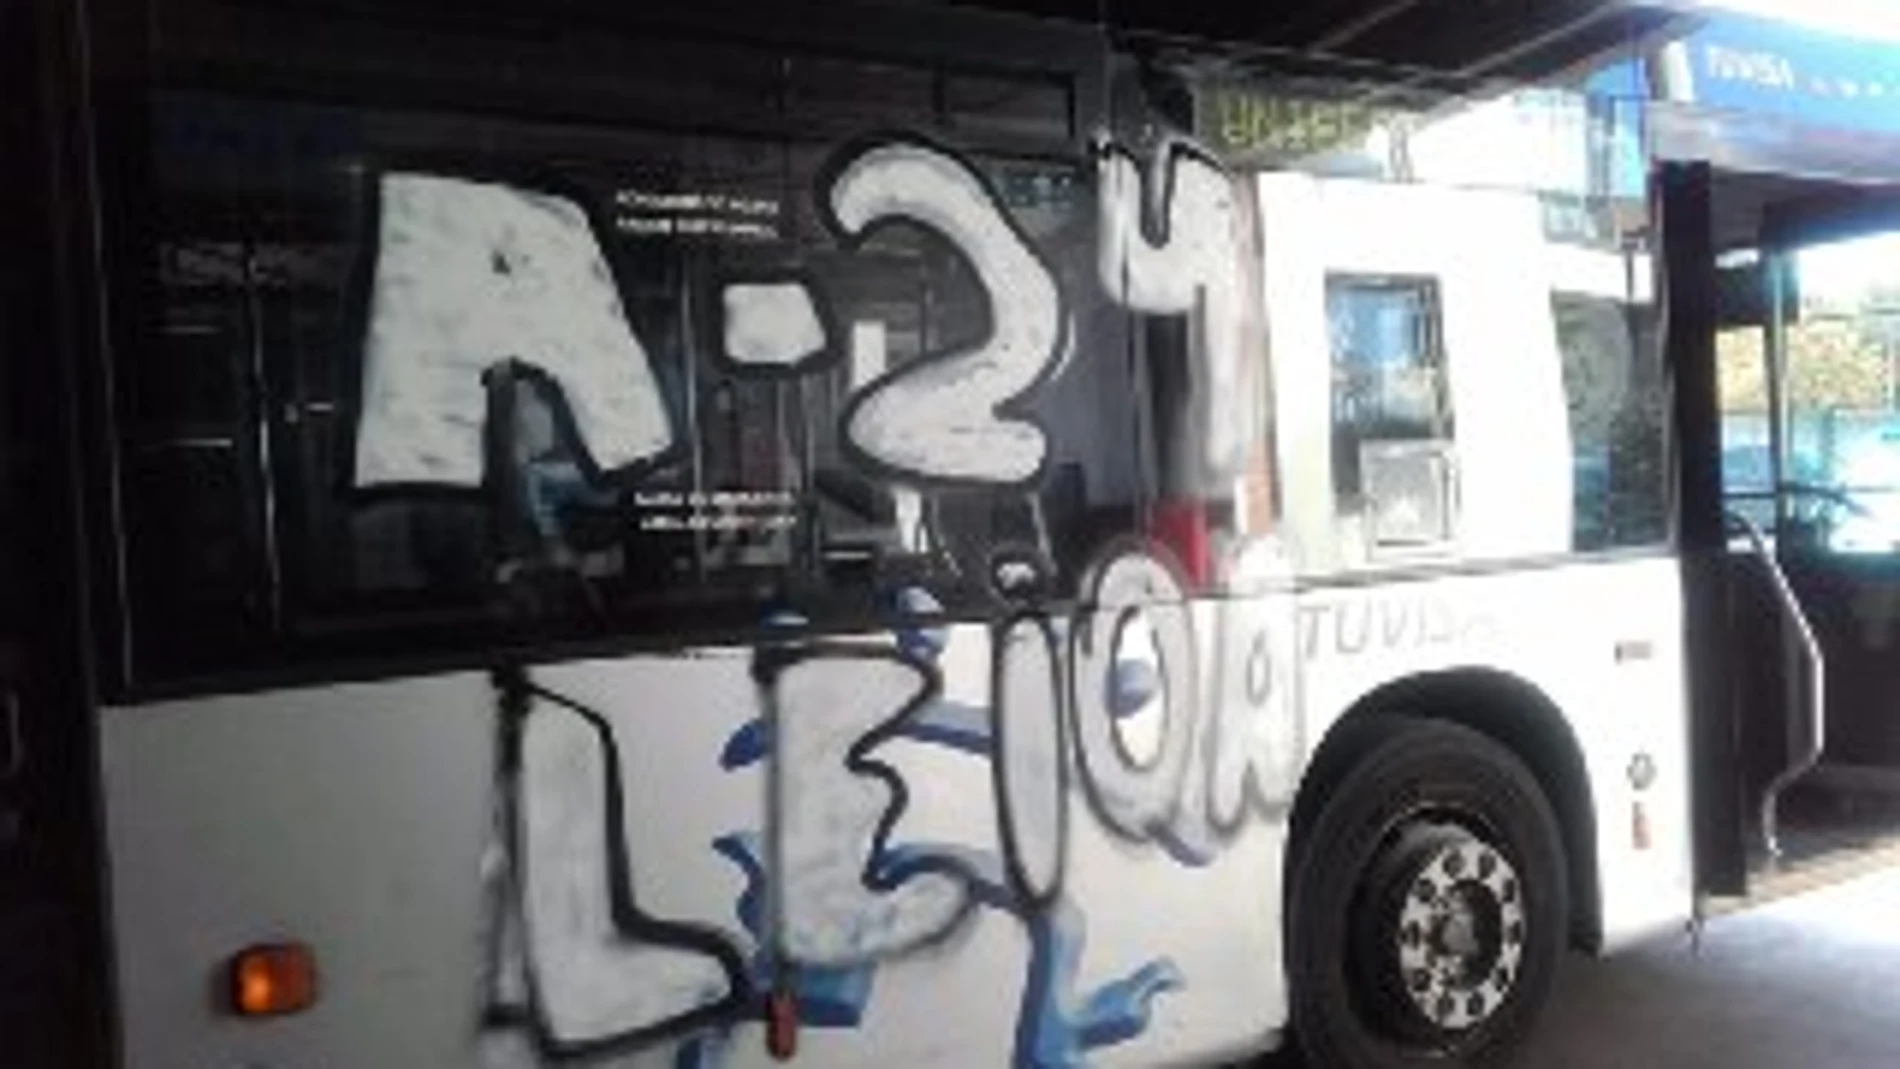 Encapuchados armados con barras de hierro atacan un autobús urbano en Vitoria